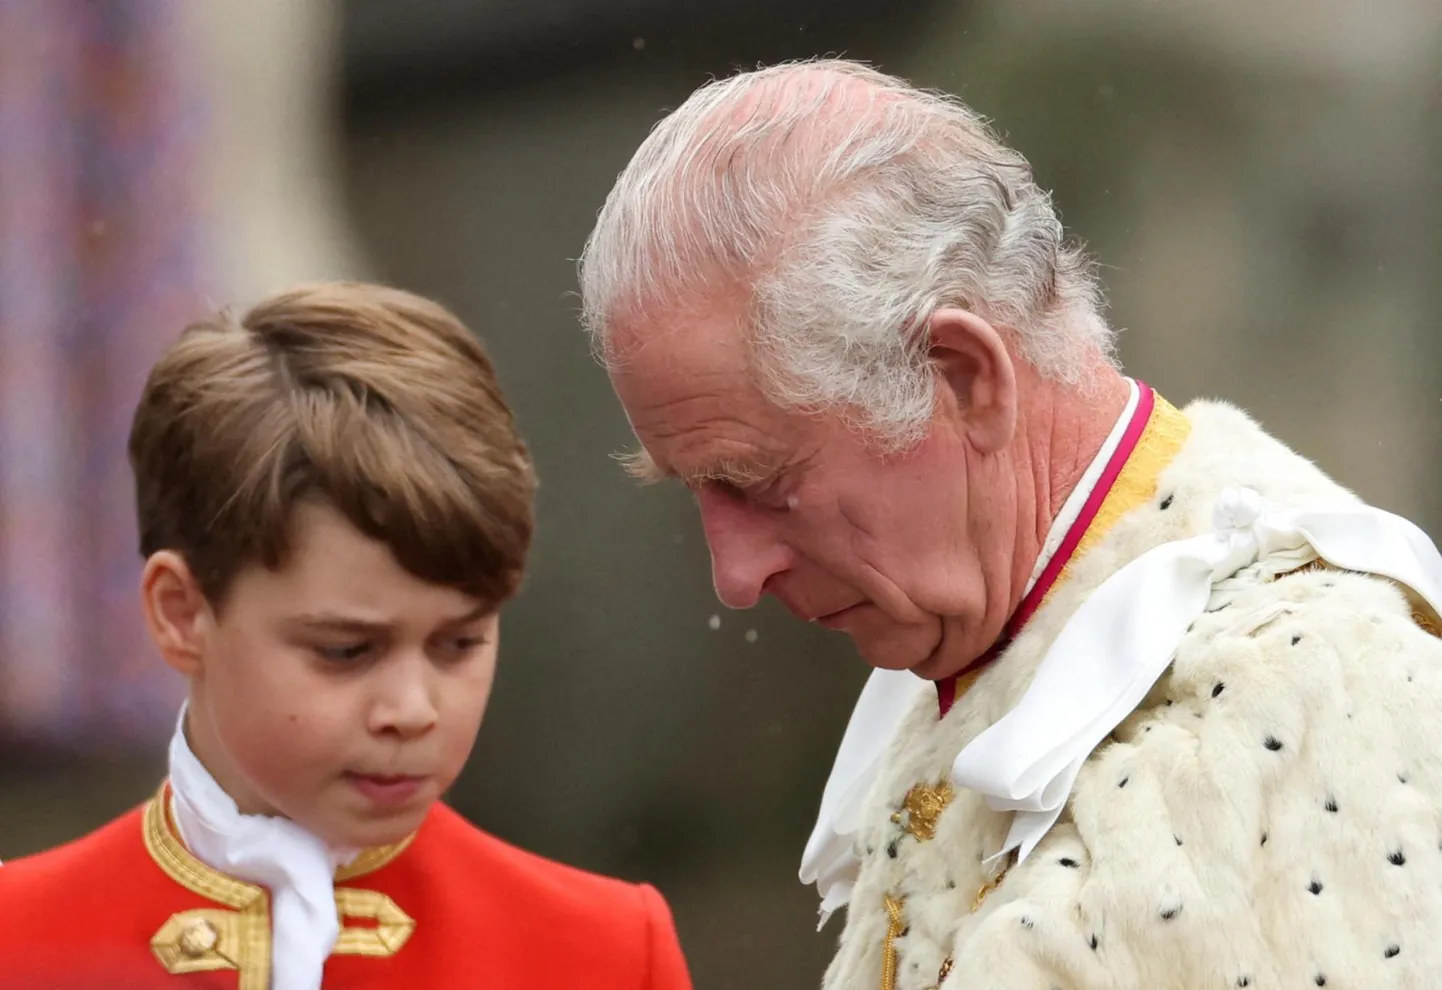 Kuningas Charles kroonimispäeval ­lapselapse prints George’iga, kellest ­tulevikus saab samuti kuningas.

FOTO: Henry Nicholls/Reuters/Scanpix